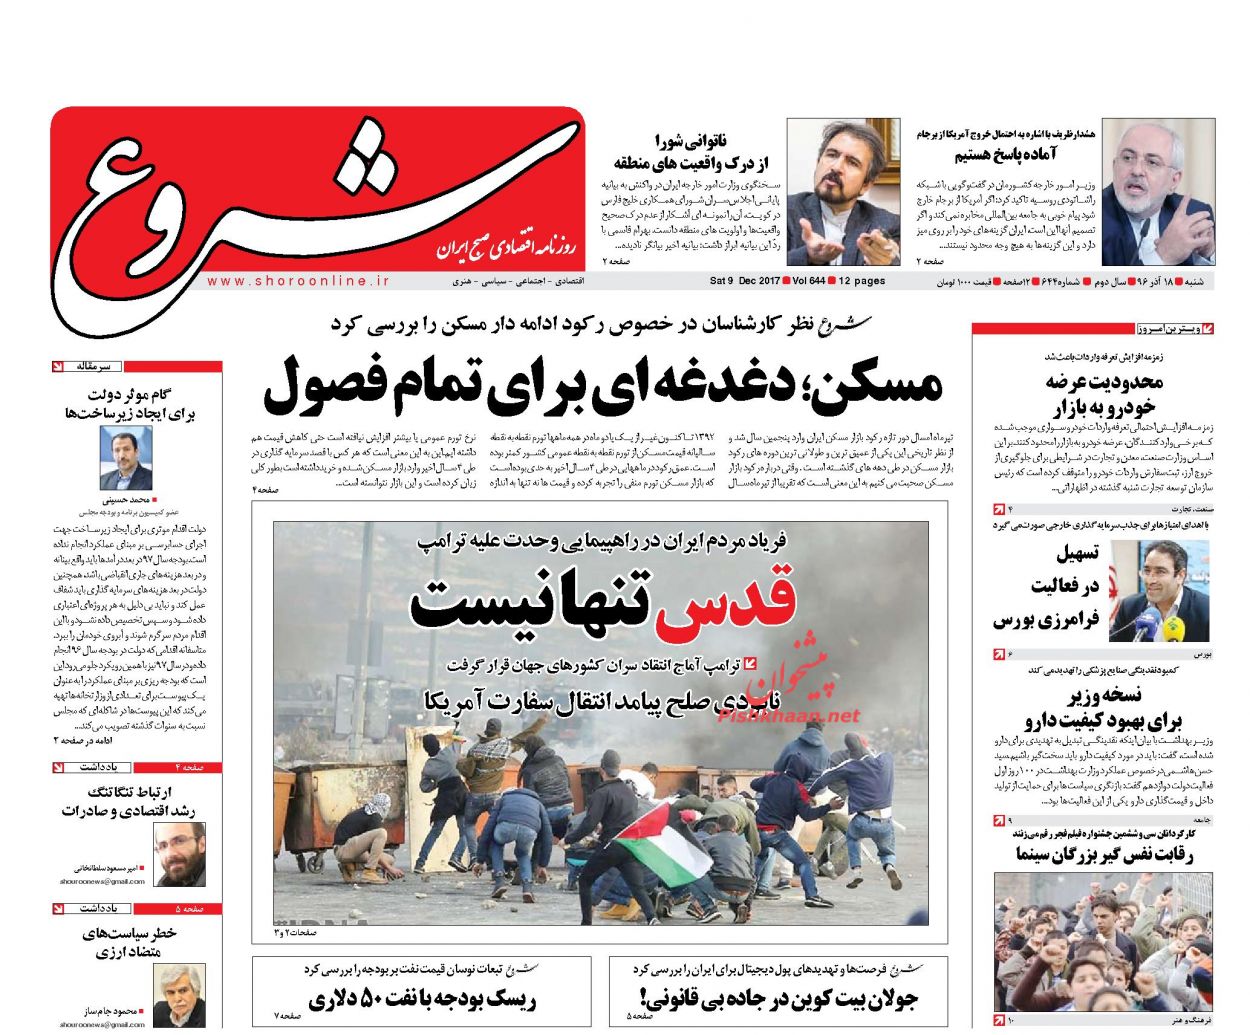 عناوین روزنامه های شنبه ۱۸ آذرماه ۹۶؛ از سقوط آزاد بدون “چتر نجات” تا آمدن “صدای پای تورم”